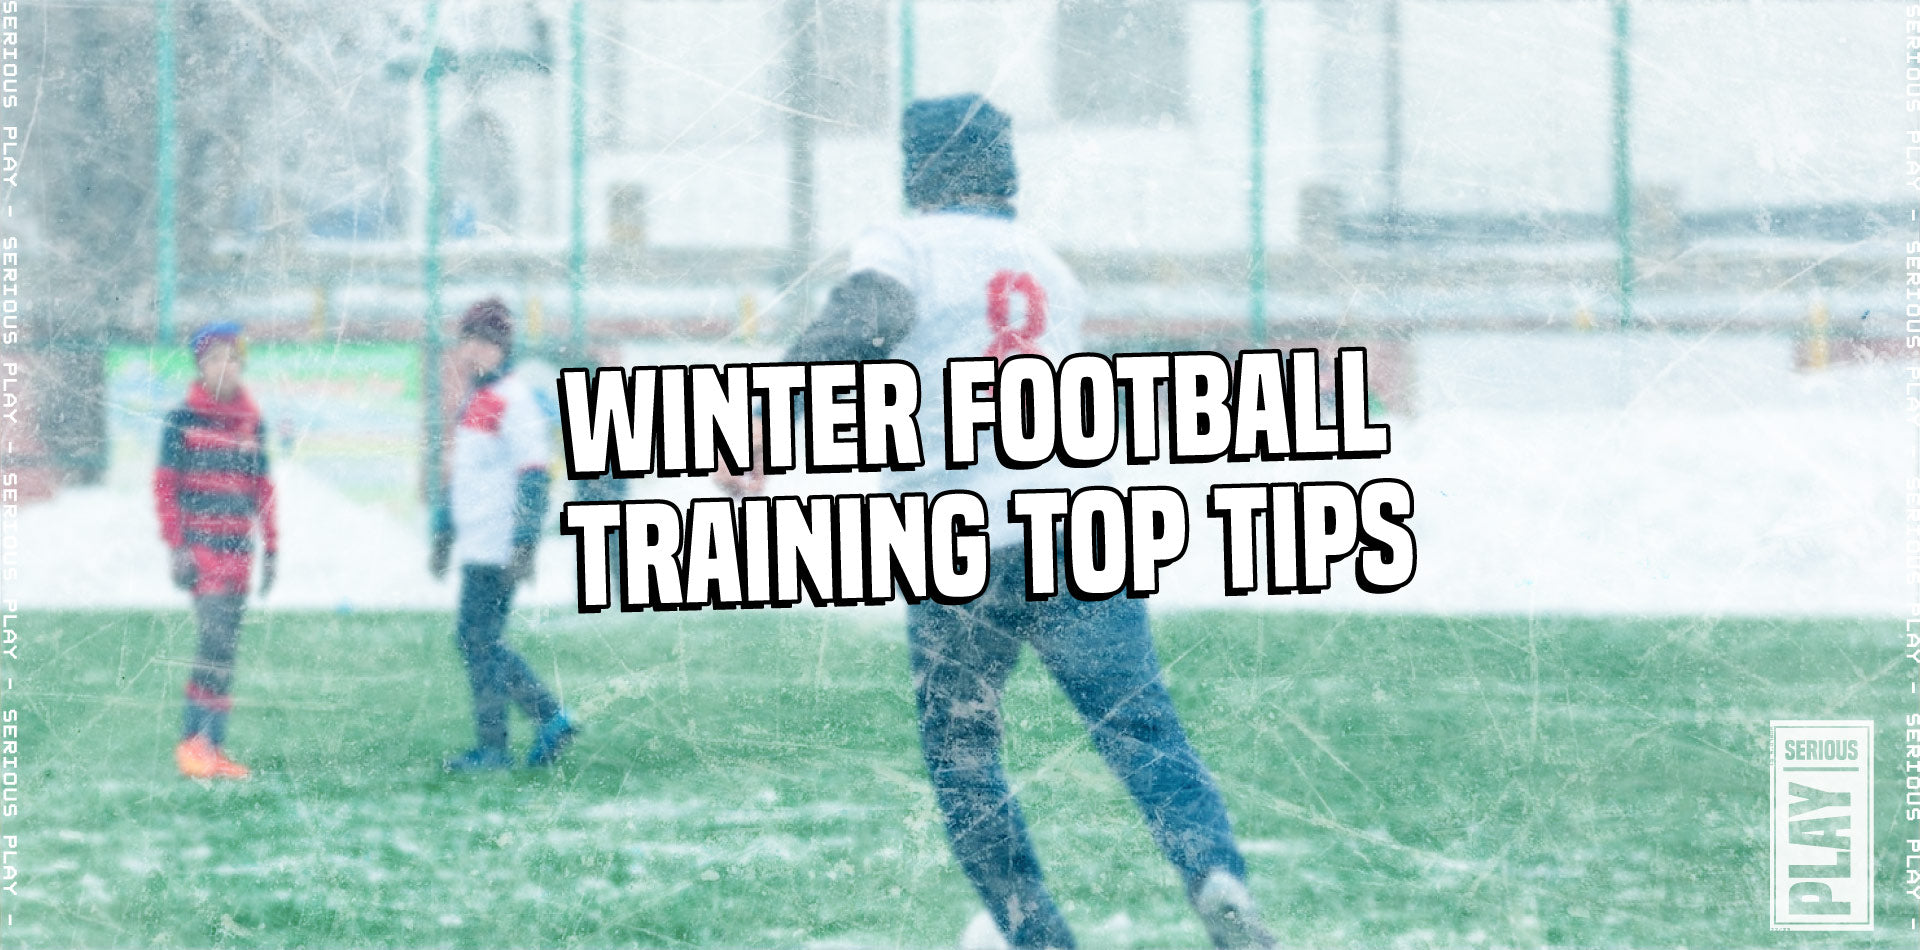 Football : Comment bien s'équiper pour jouer en hiver